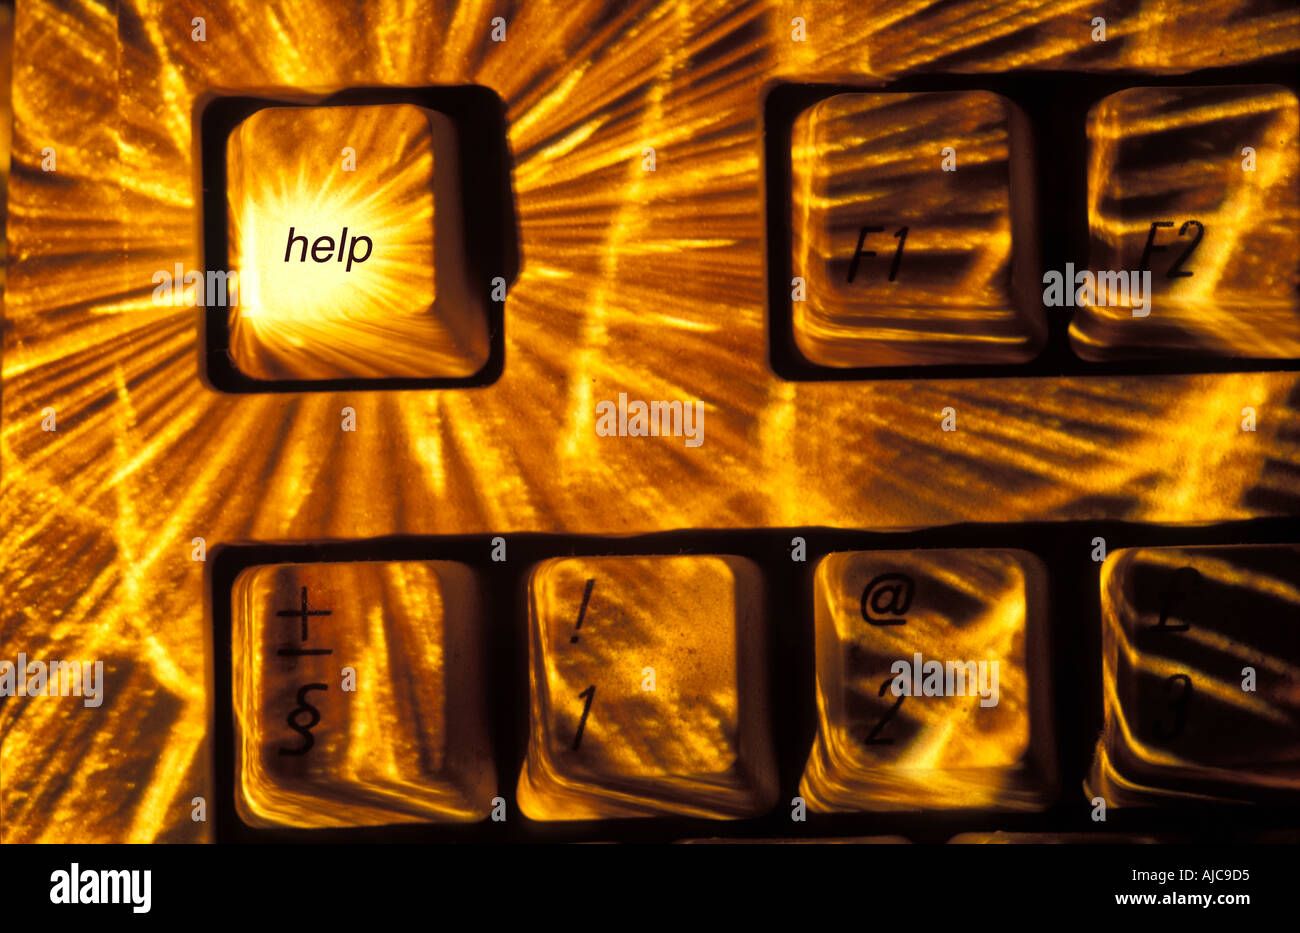 Ein Sunburst konzentrierte sich auf die Hilfe-Taste einer Tastatur "Digital verstärkte" Bild Hilfe auf Schlüssel eingefügt Stockfoto